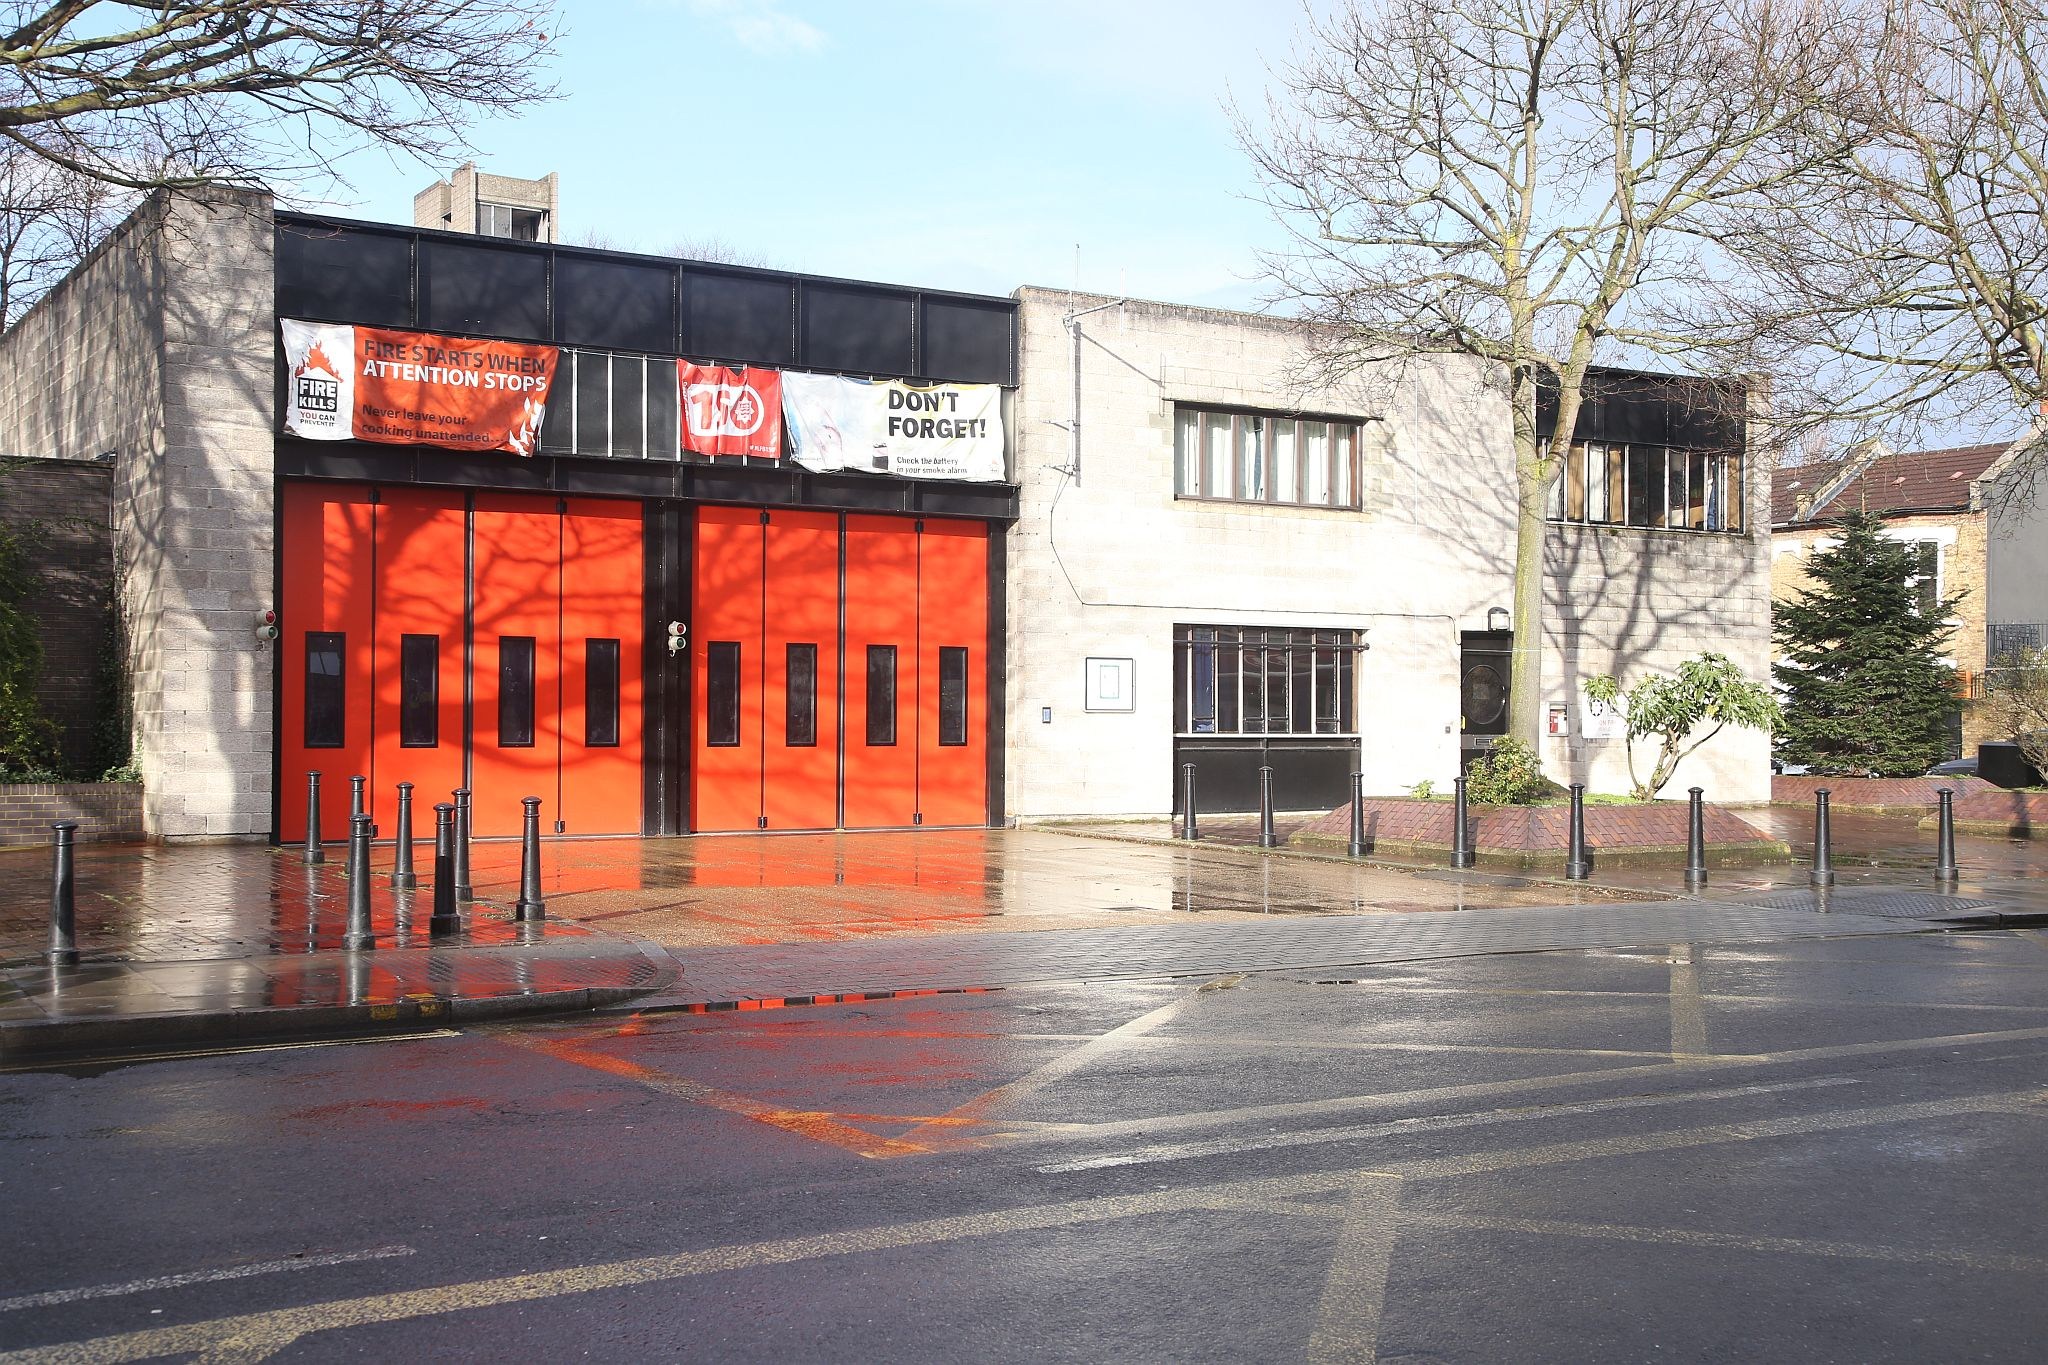 Stoke Newington Fire Station taken on 05-Mar-2017. London Fire Brigade.